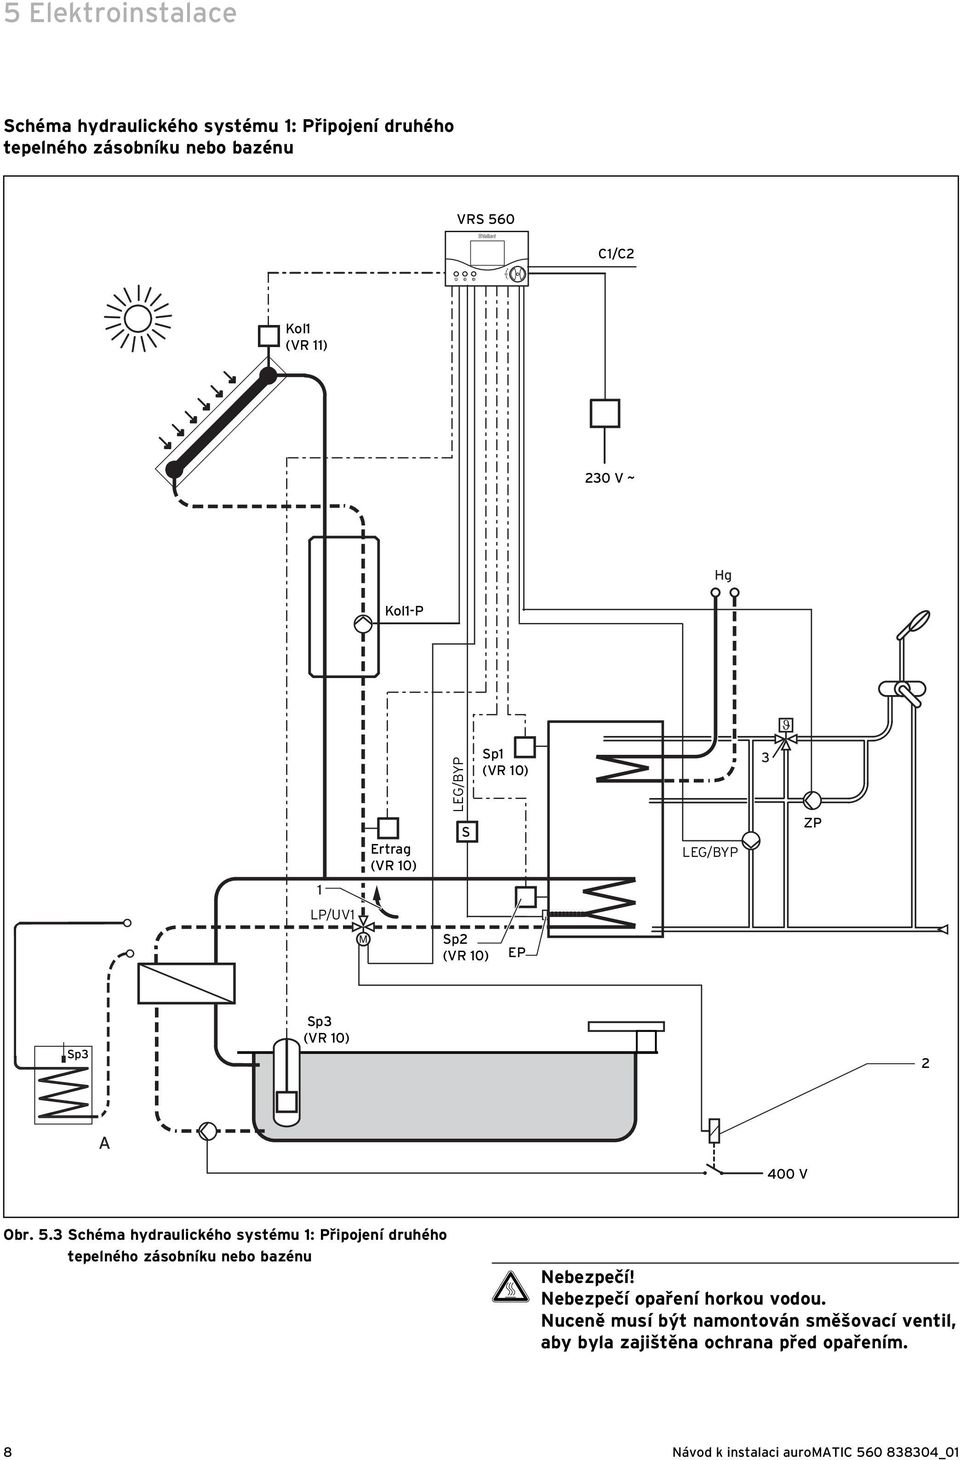 3 Schéma hydraulického systému 1: Připojení druhého tepelného zásobníku nebo bazénu H Nebezpečí!